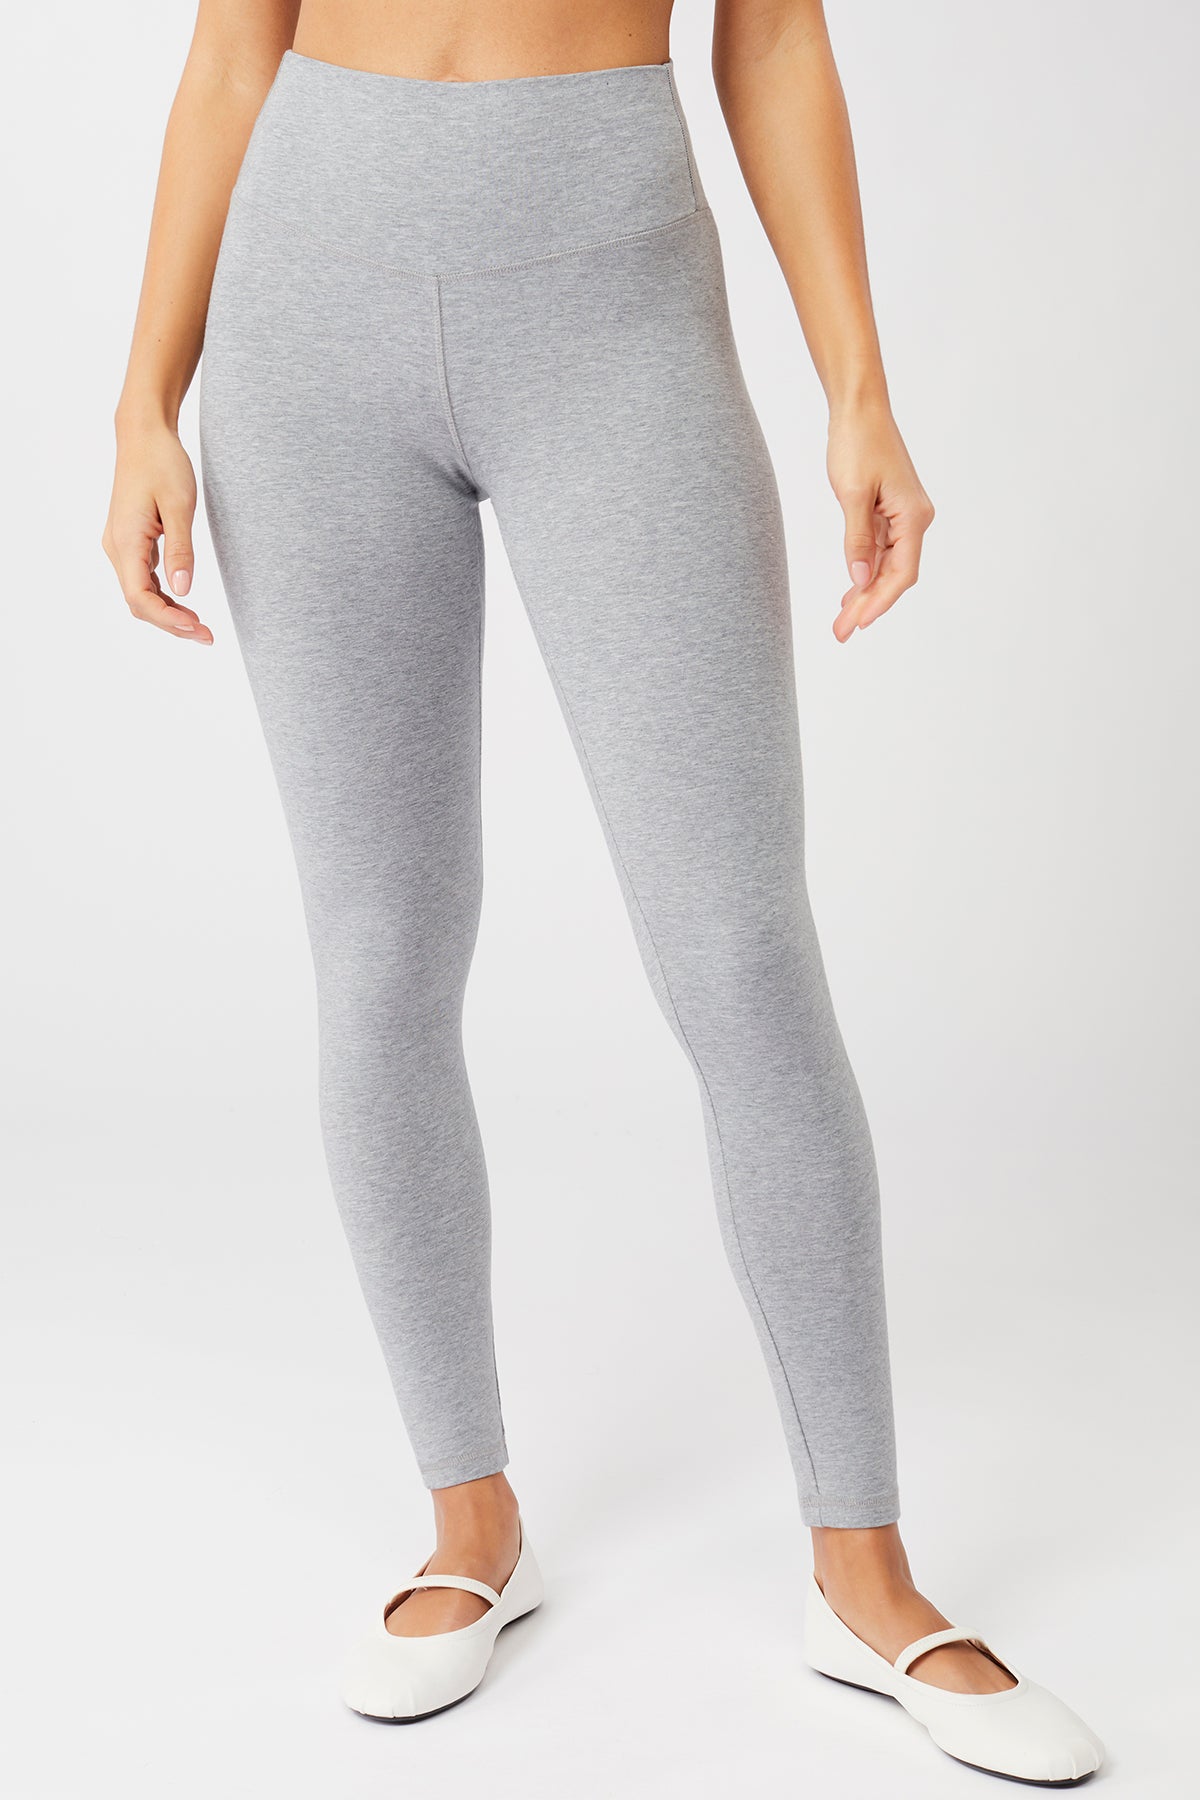 Buy Forever 21 women full length textured leggings sage green Online |  Brands For Less